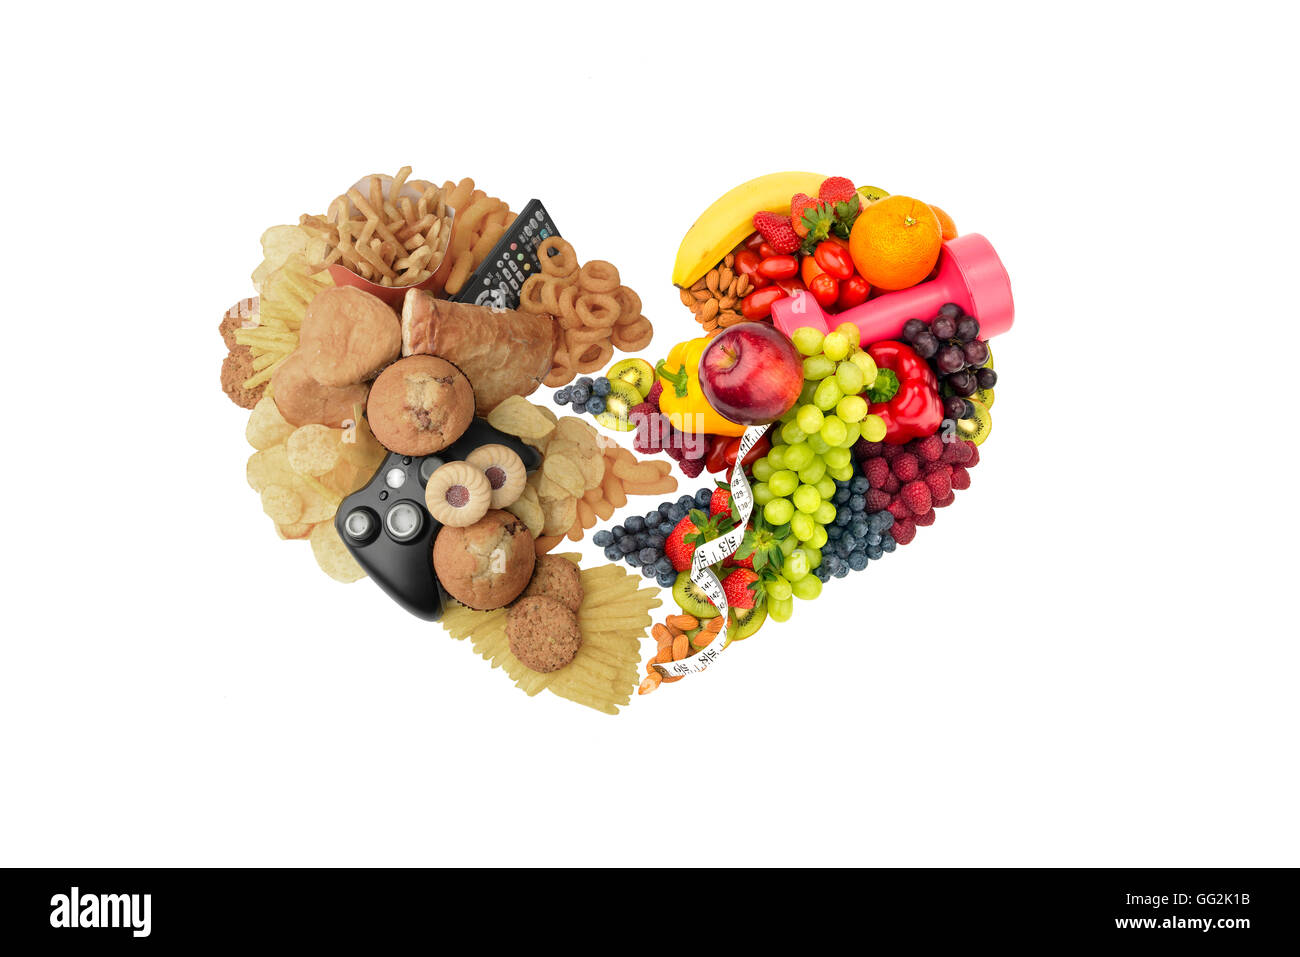 Mode de vie sain & alimentation alimentation et mode de vie malsain et aliments de régime alimentaire deux moitié de coeur concept Banque D'Images